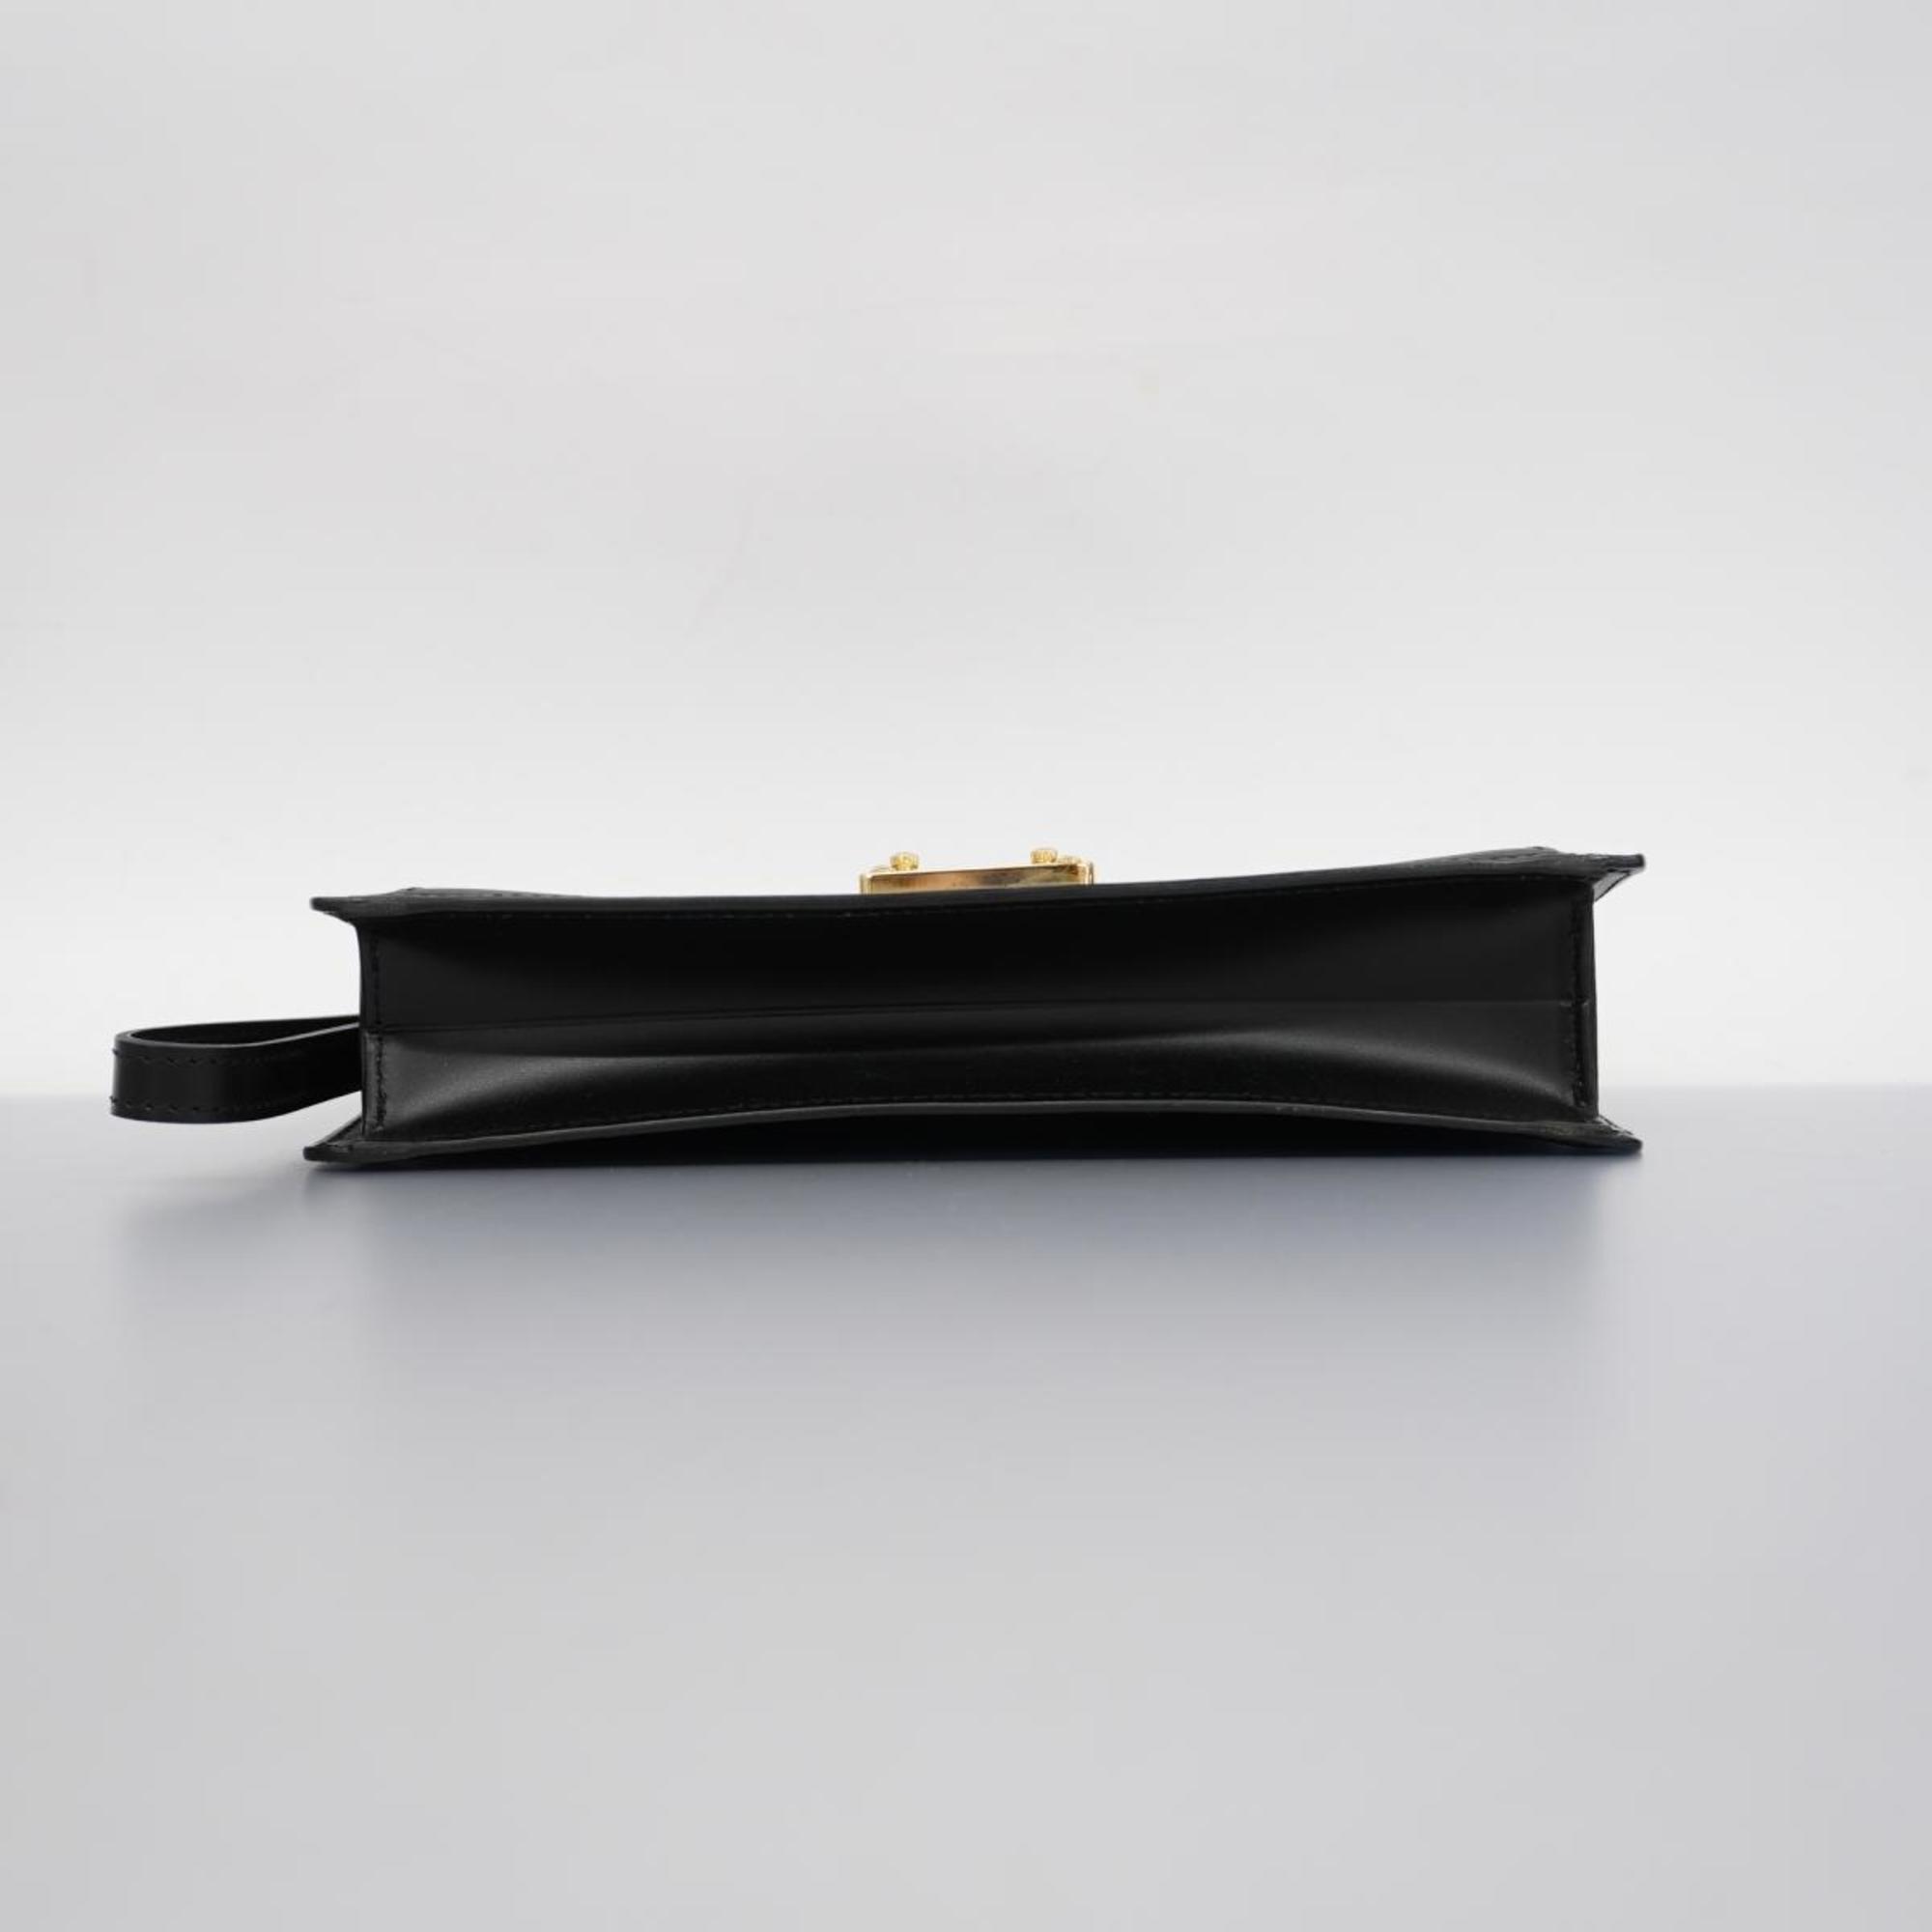 Louis Vuitton Clutch Bag Epi Pochette Serie Dragonne M52612 Noir Men's